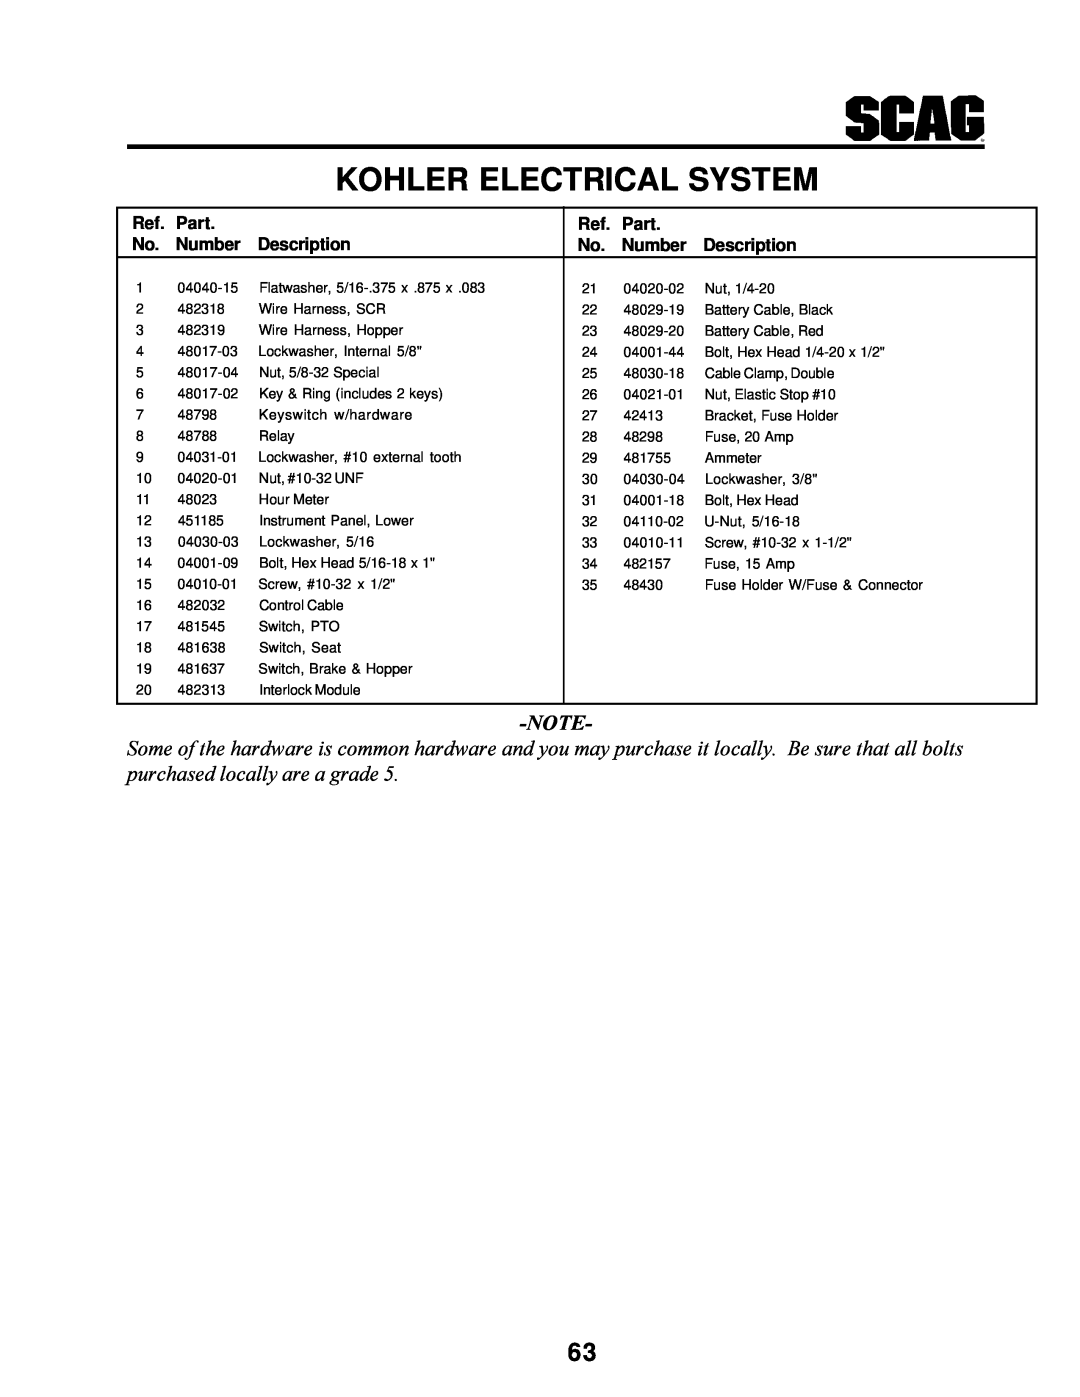 MB QUART SCR manual Kohler Electrical System, Part, Number, Description 